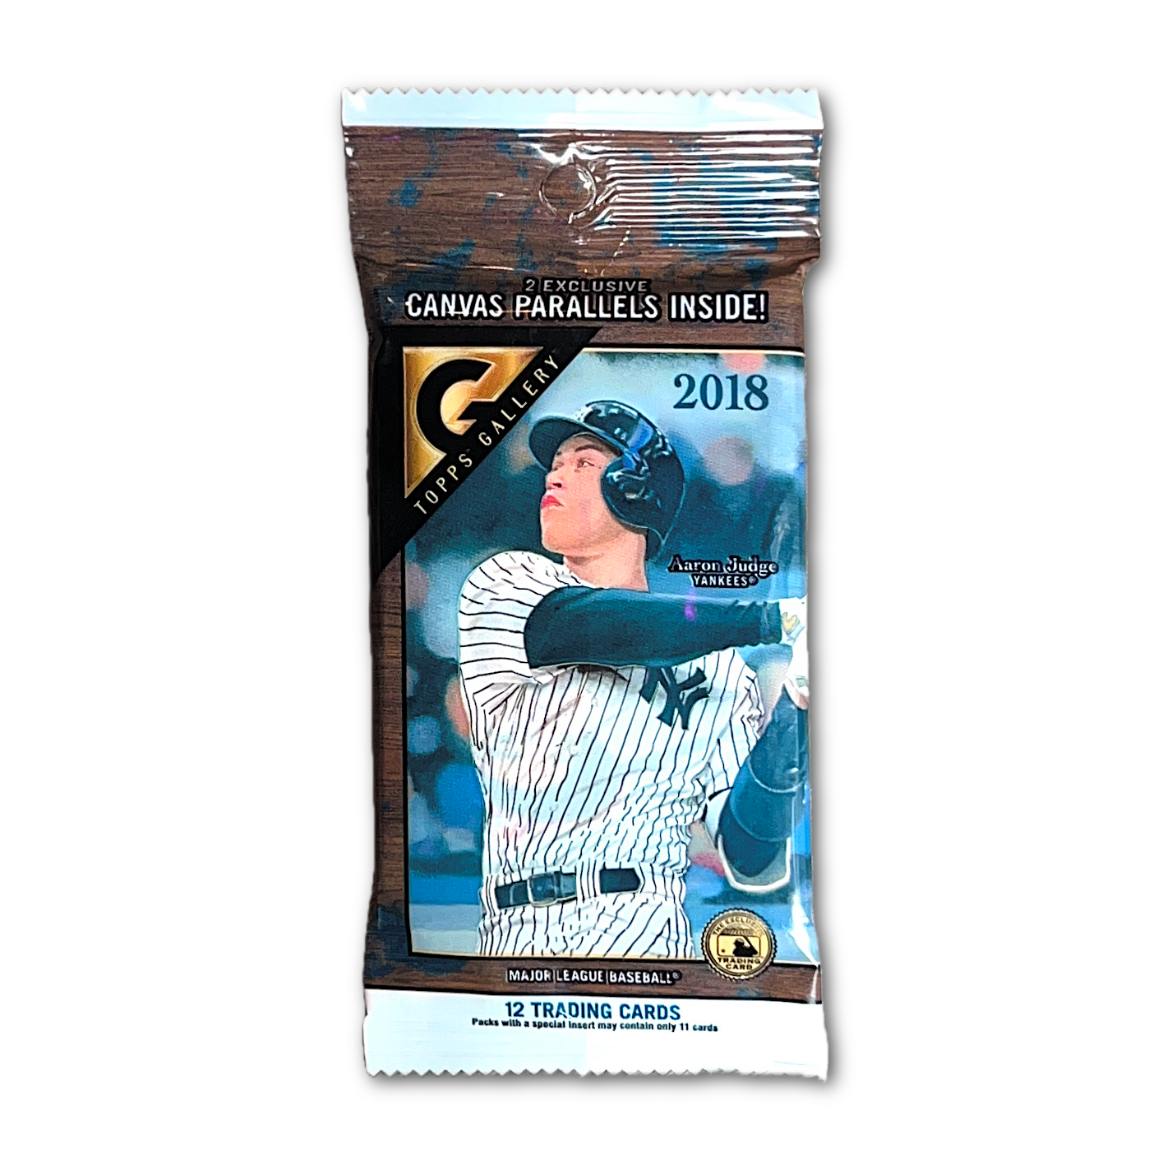 2018 Topps Gallery Series MLB Baseball Retail Hanger Pack